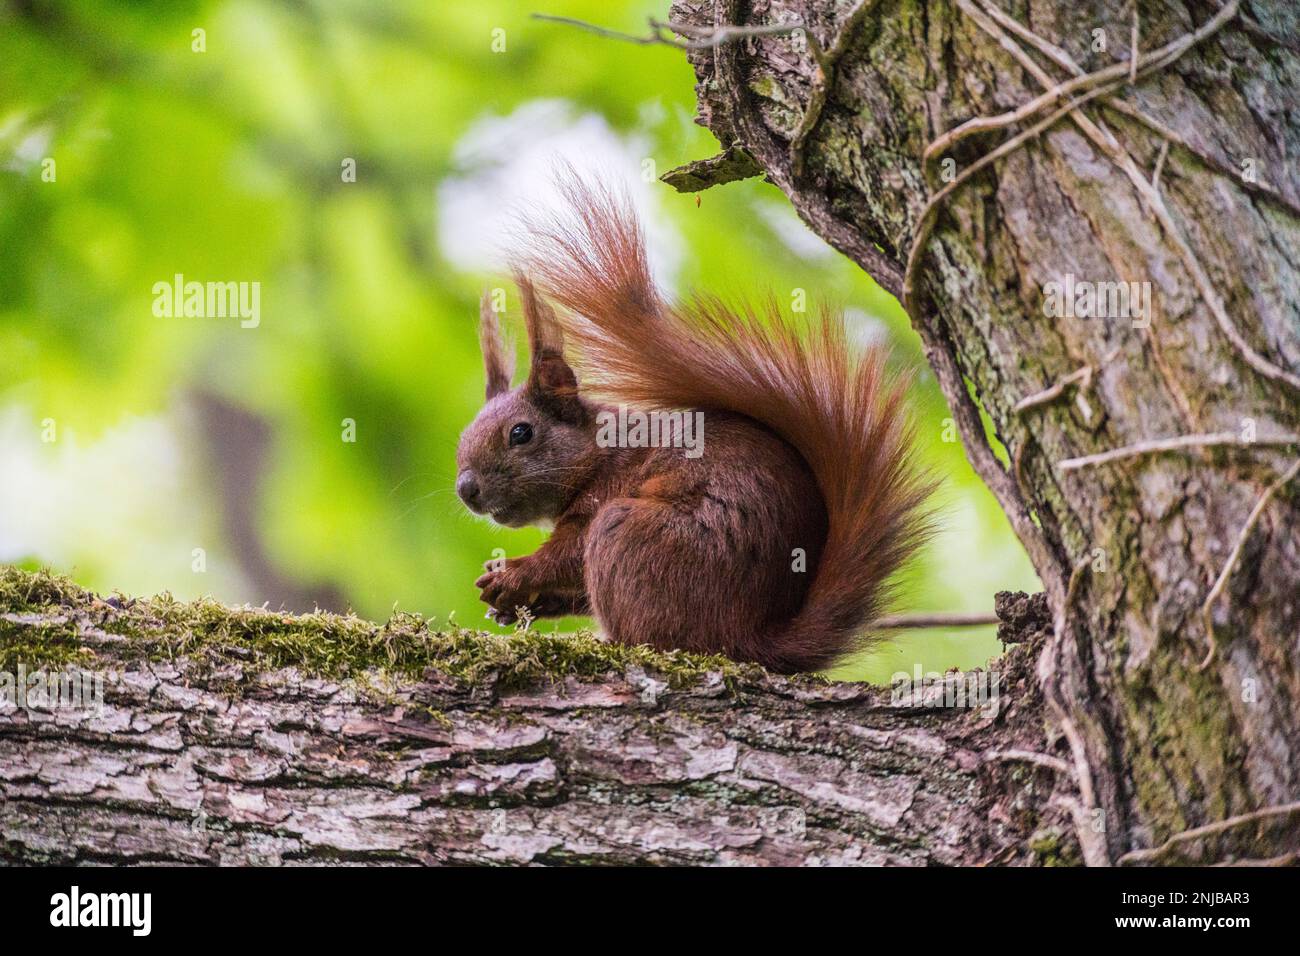 Eurasisches Eichhörnchen auf Ast sitzend und eine Eichel futternd - Eurasisches rotes Eichhörnchen, das auf einem Ast sitzt und eine Eichel isst, Hintergrund verschwommen Stockfoto